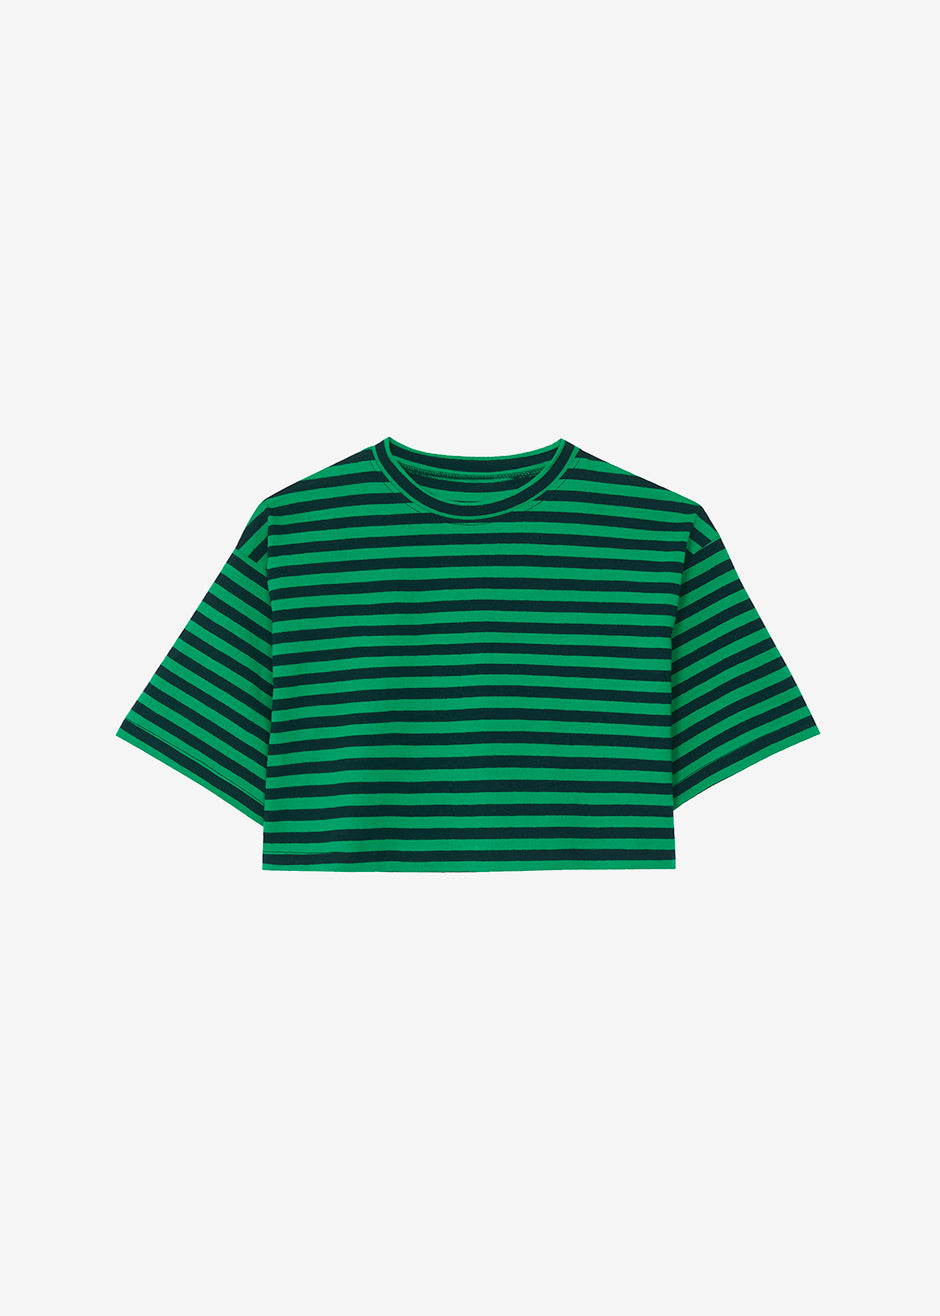 Karina Cropped T-Shirt - Kelly Green/Navy - 8